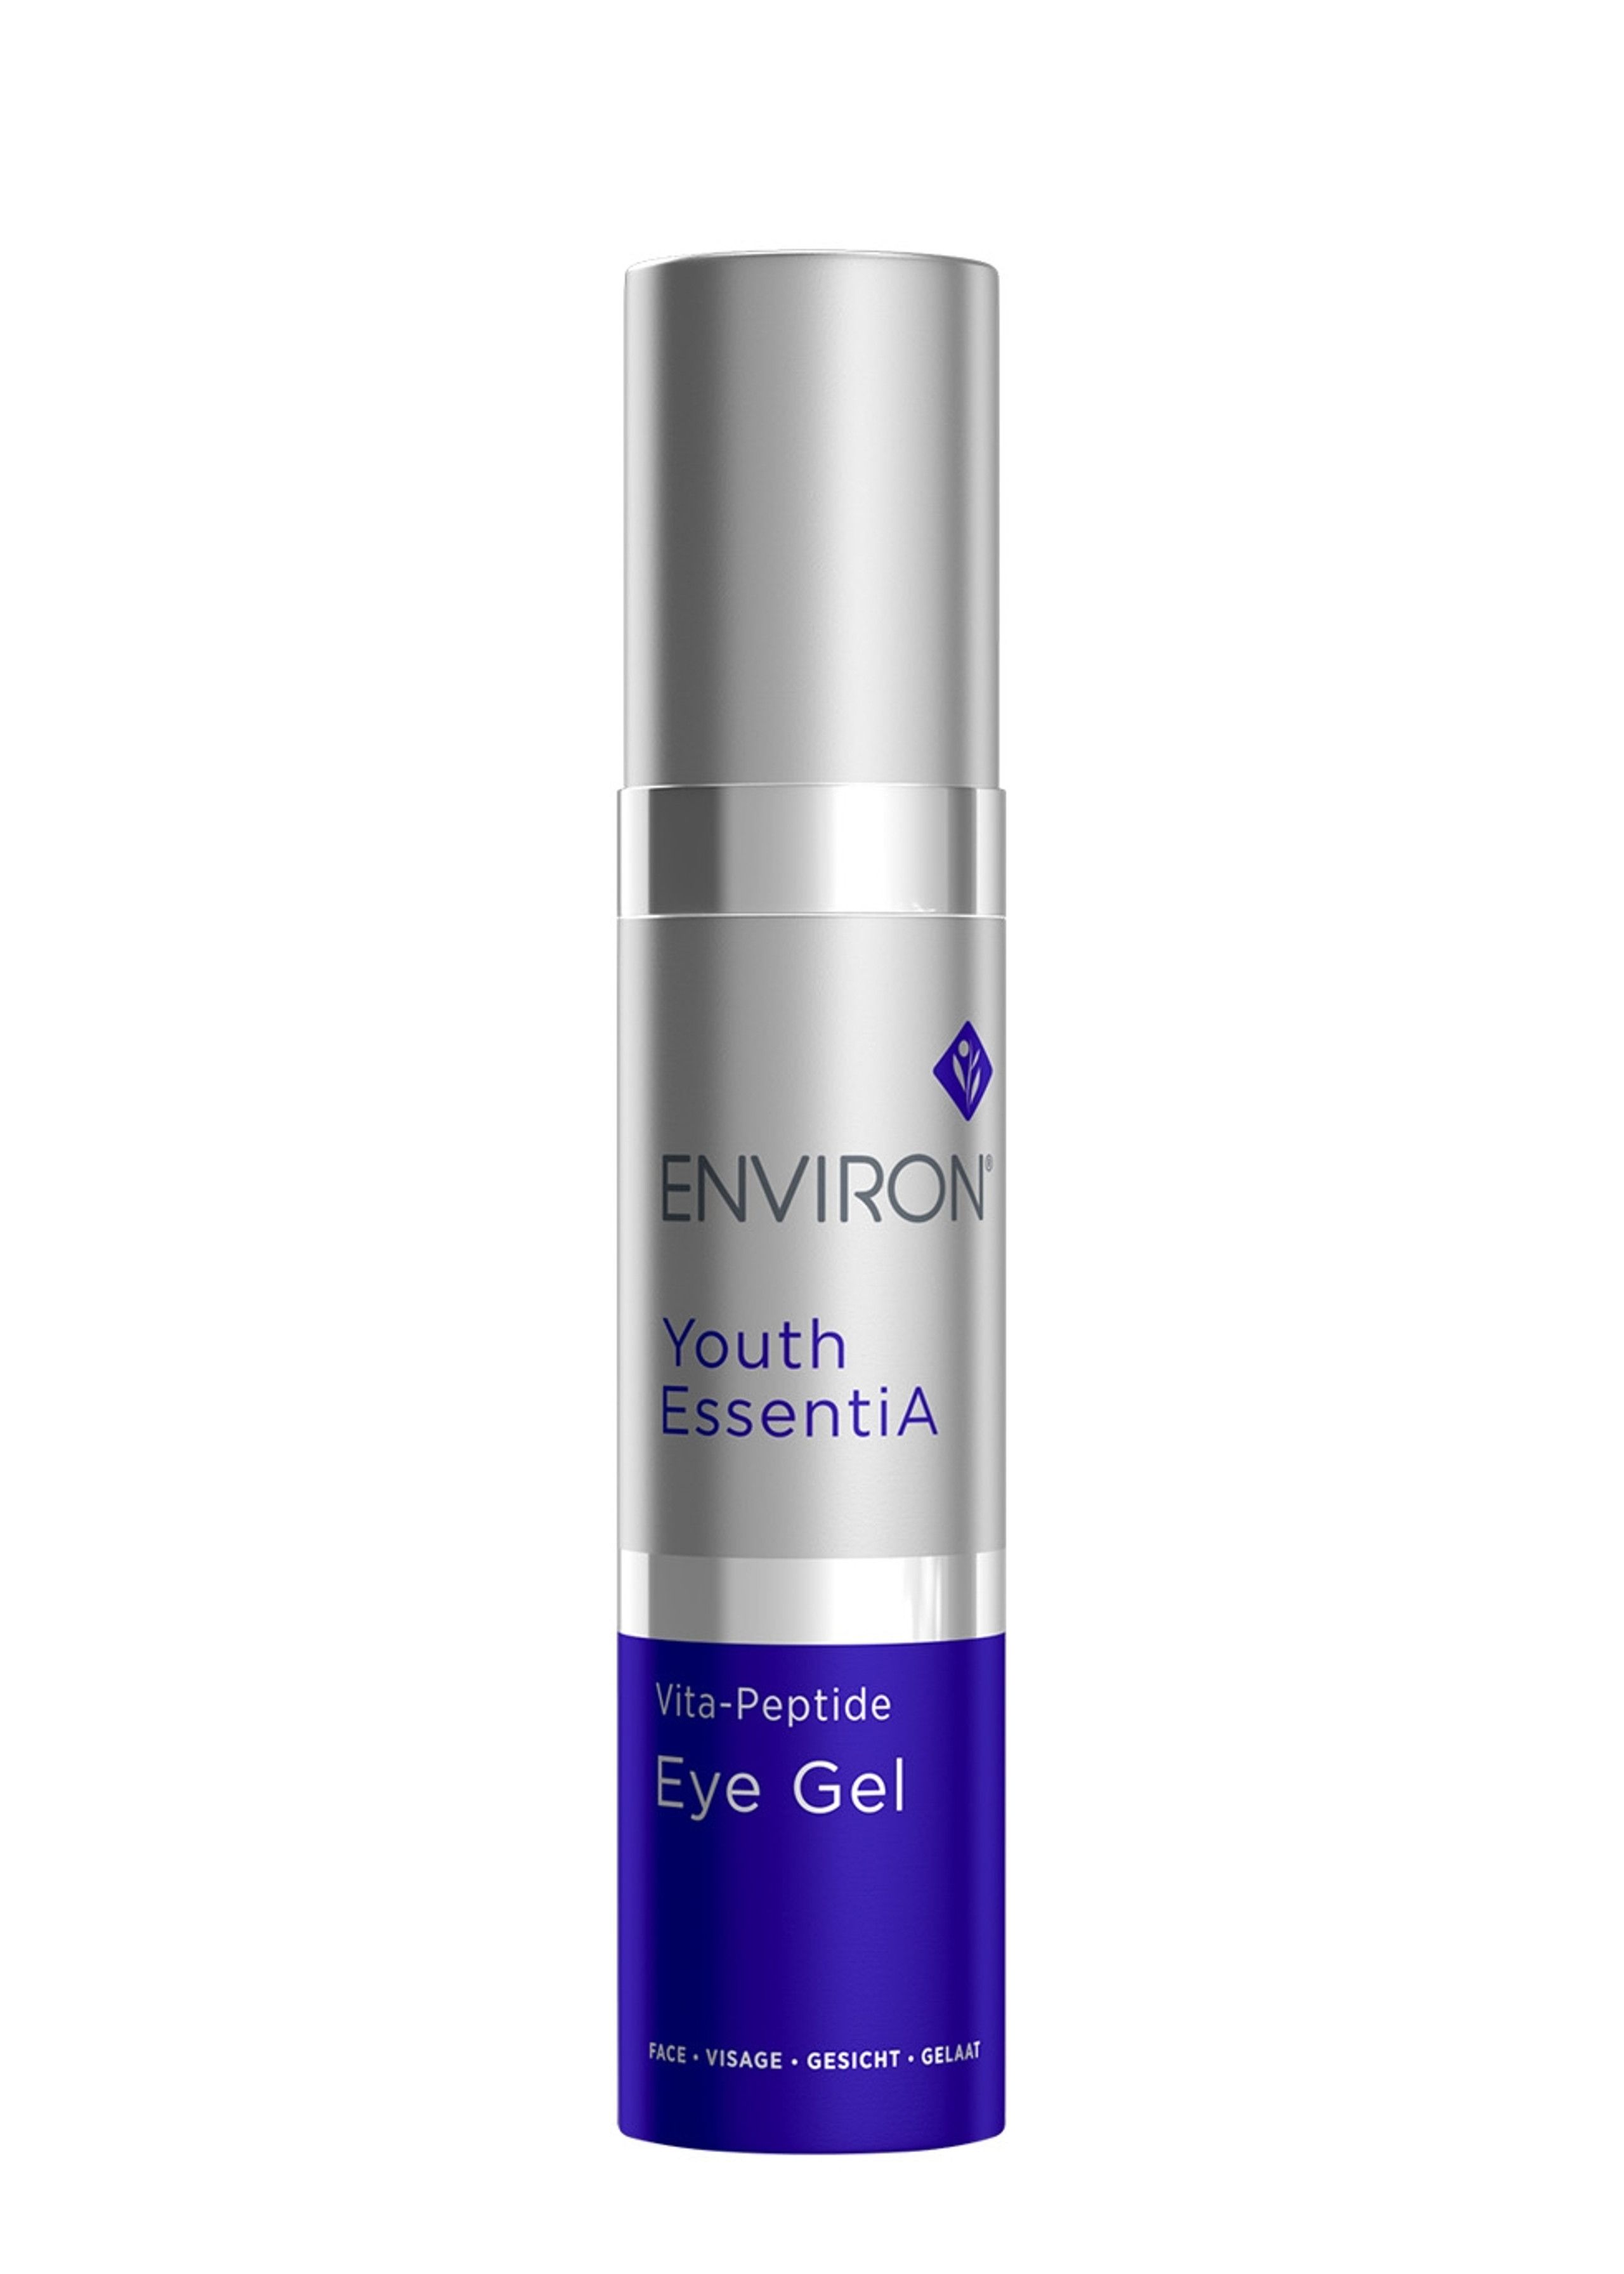 Vita Peptide Eye Gel 10ml | Harvey Nichols (Global)